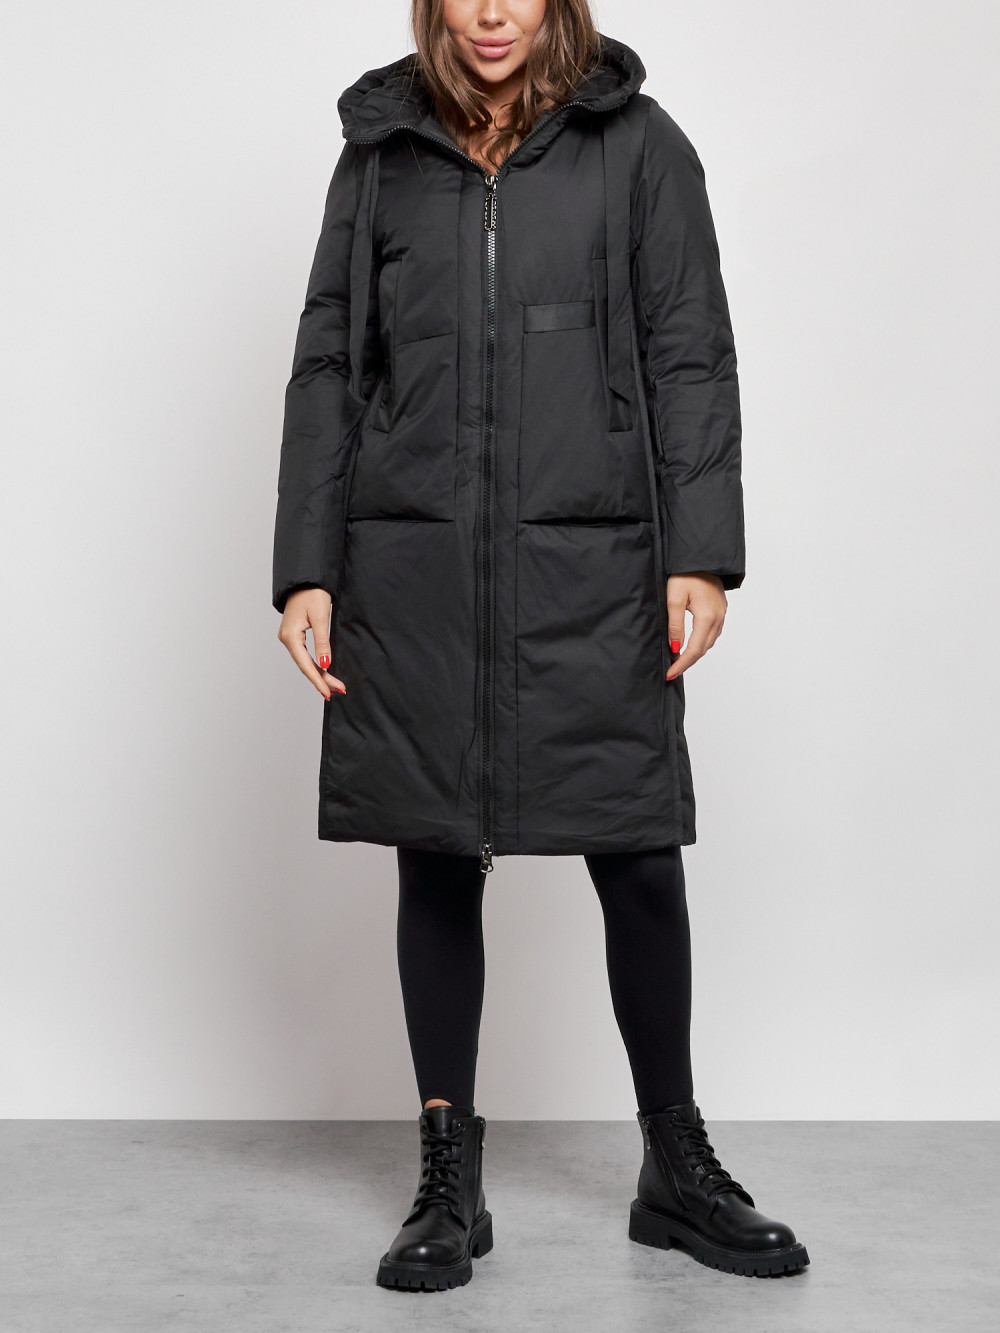 Пальто женское NoBrand AD52359 черное S